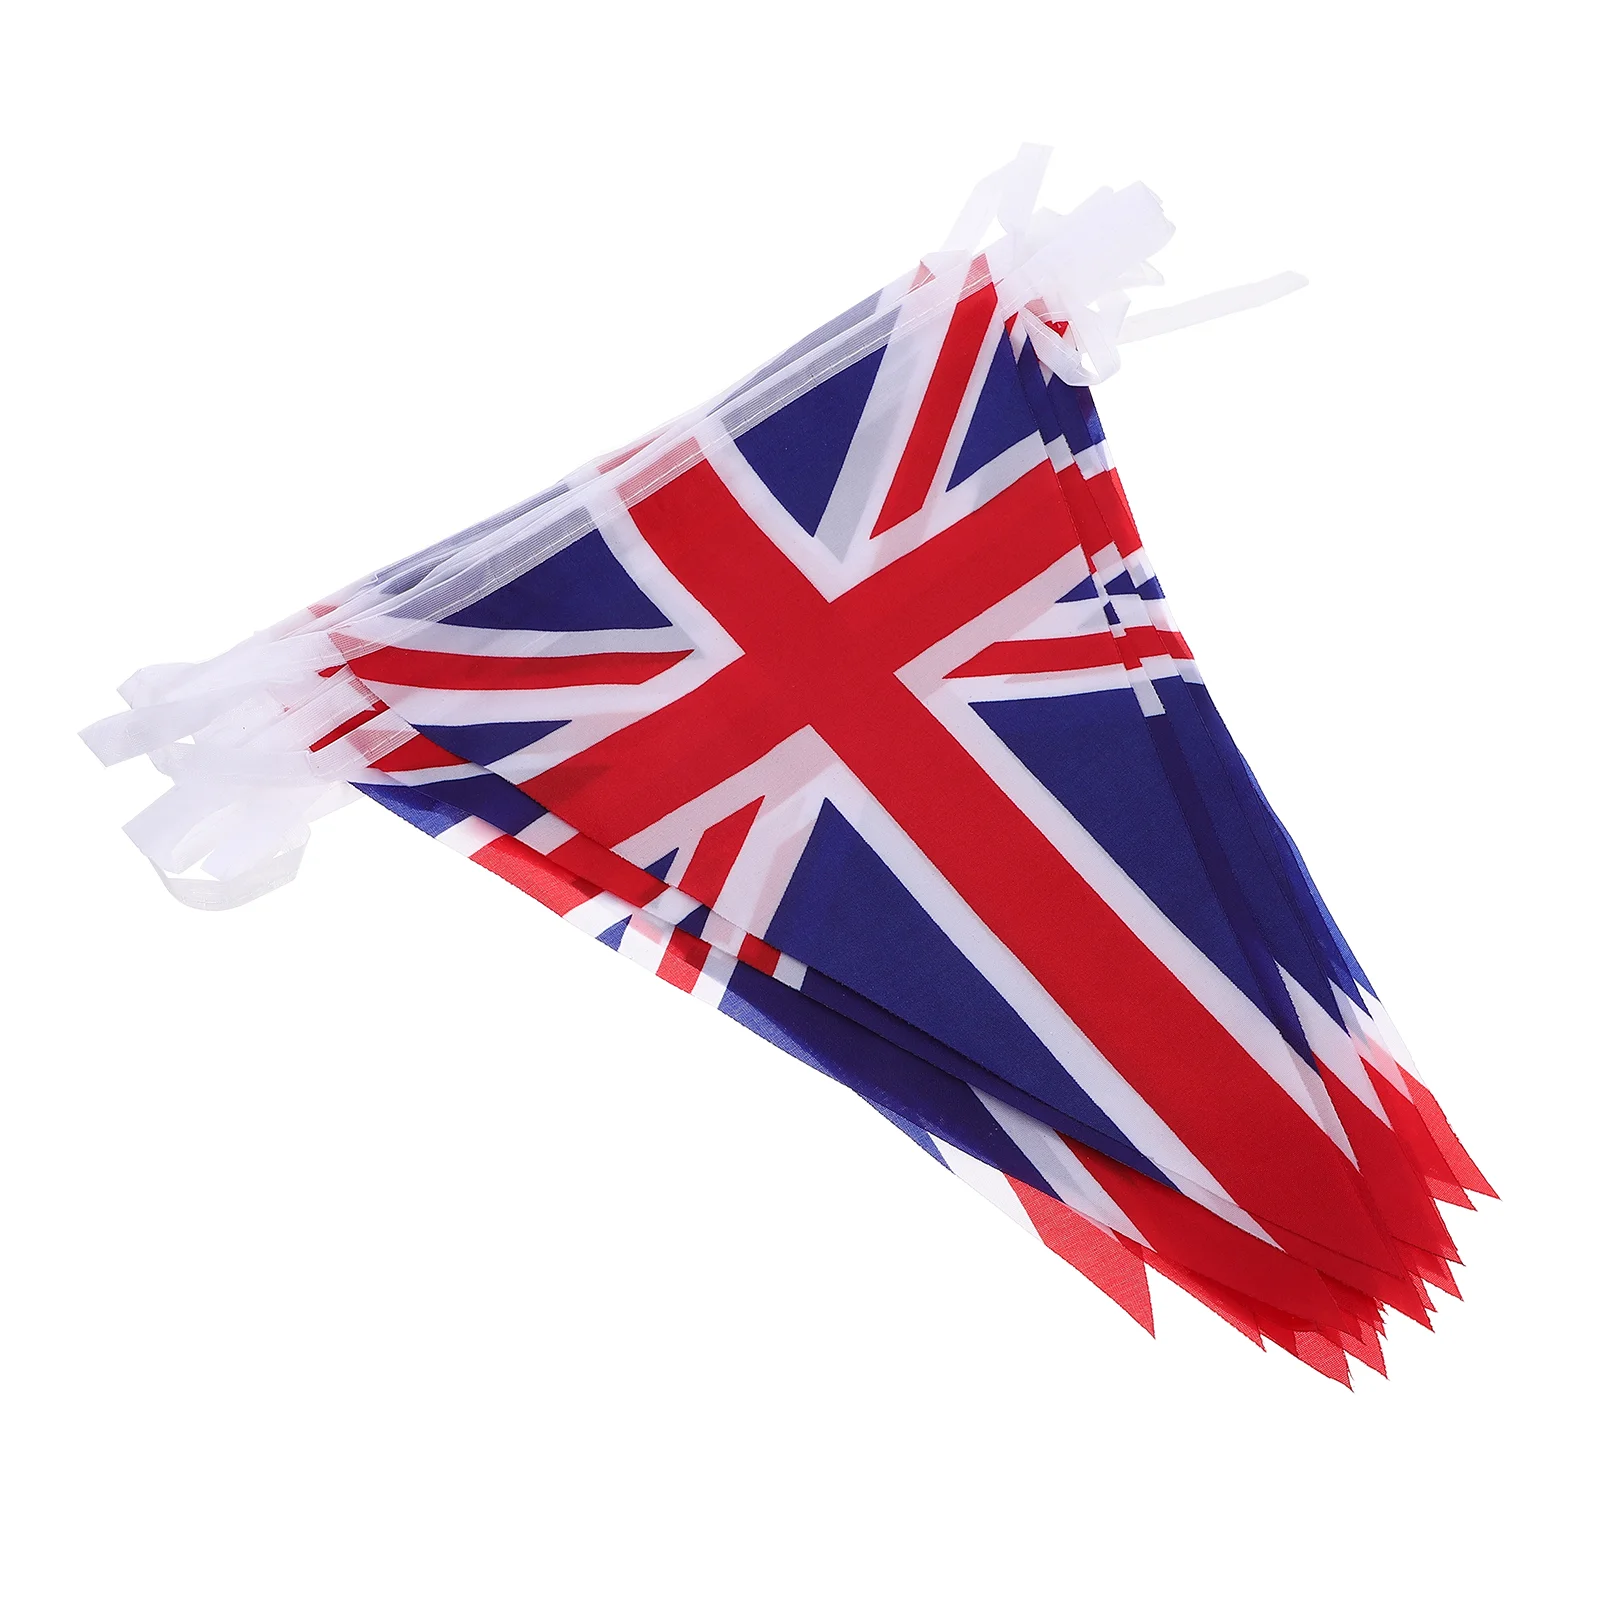 

Флаг Союза Джек флажки британские флаги Великобритания перьевая гирлянда юбилей треугольник Декор shanging